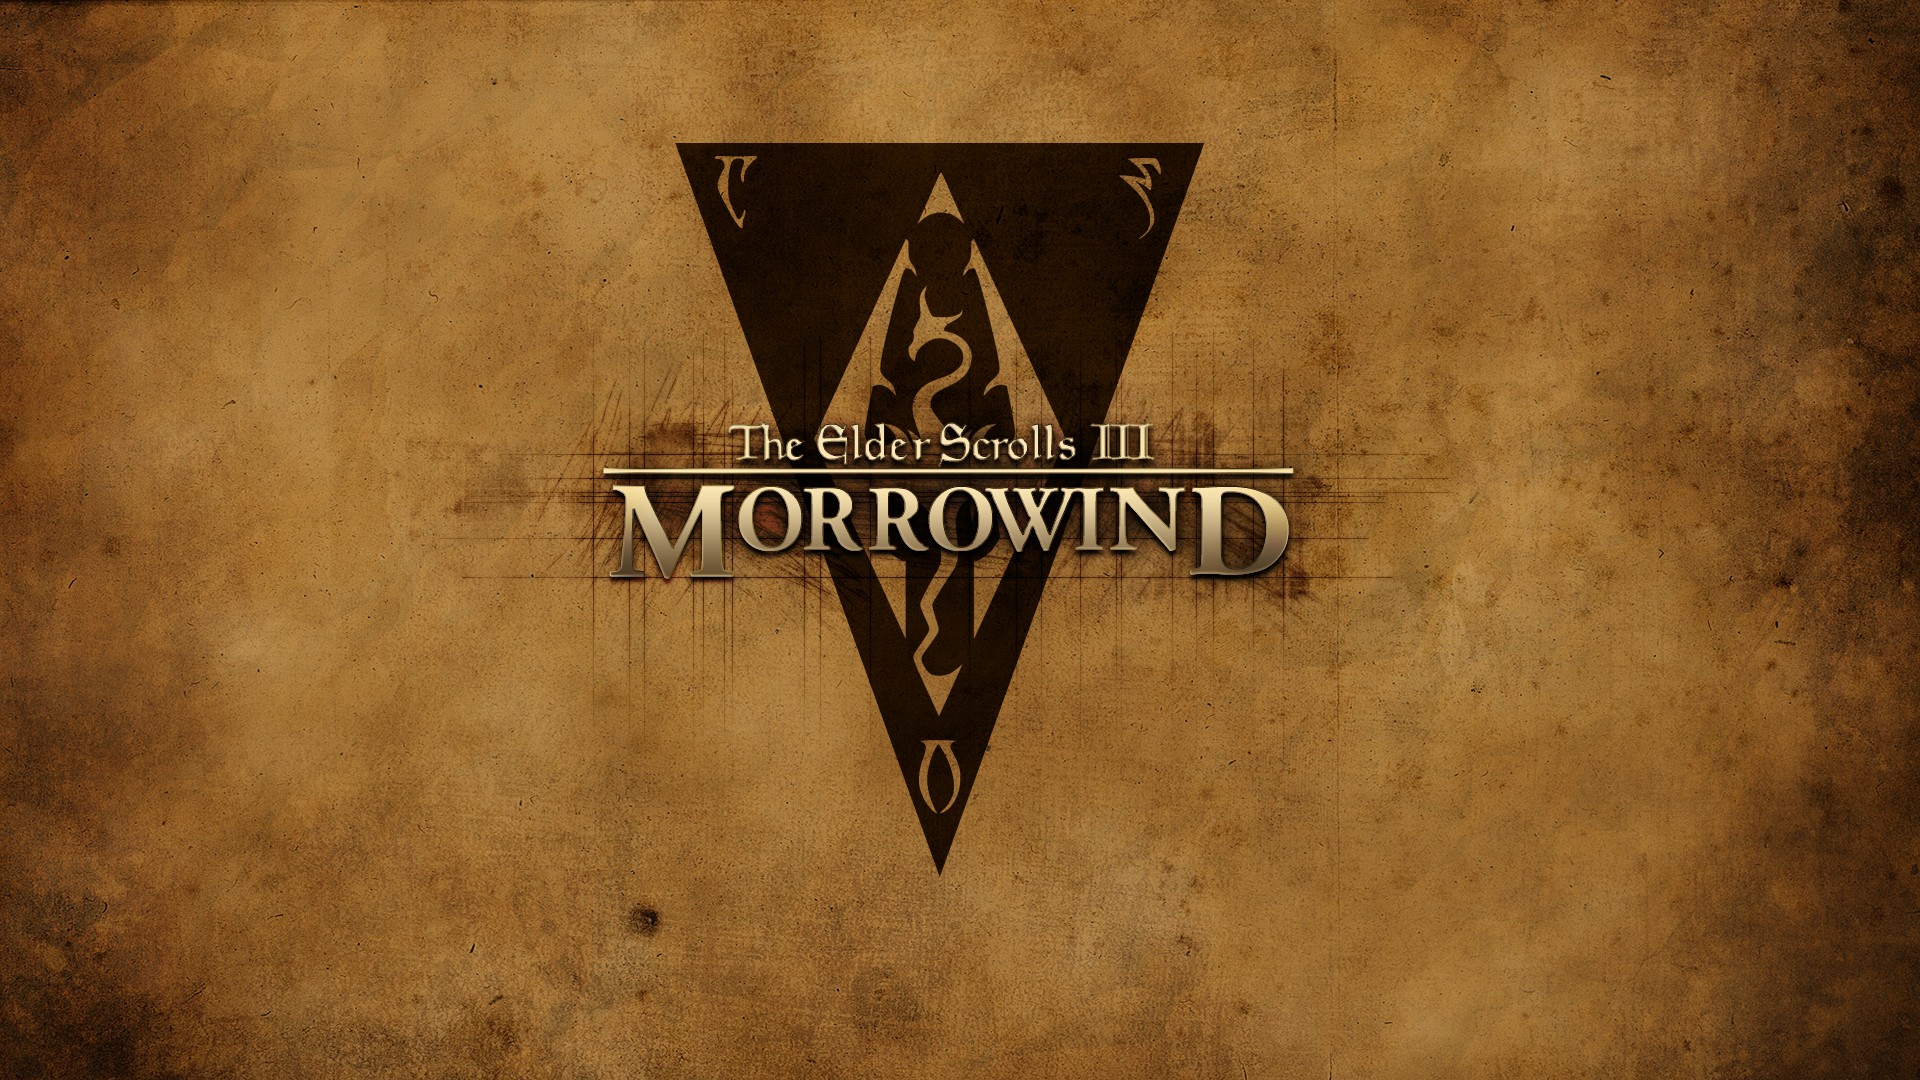 General 1920x1080 The Elder Scrolls III: Morrowind The Elder Scrolls video games RPG PC gaming